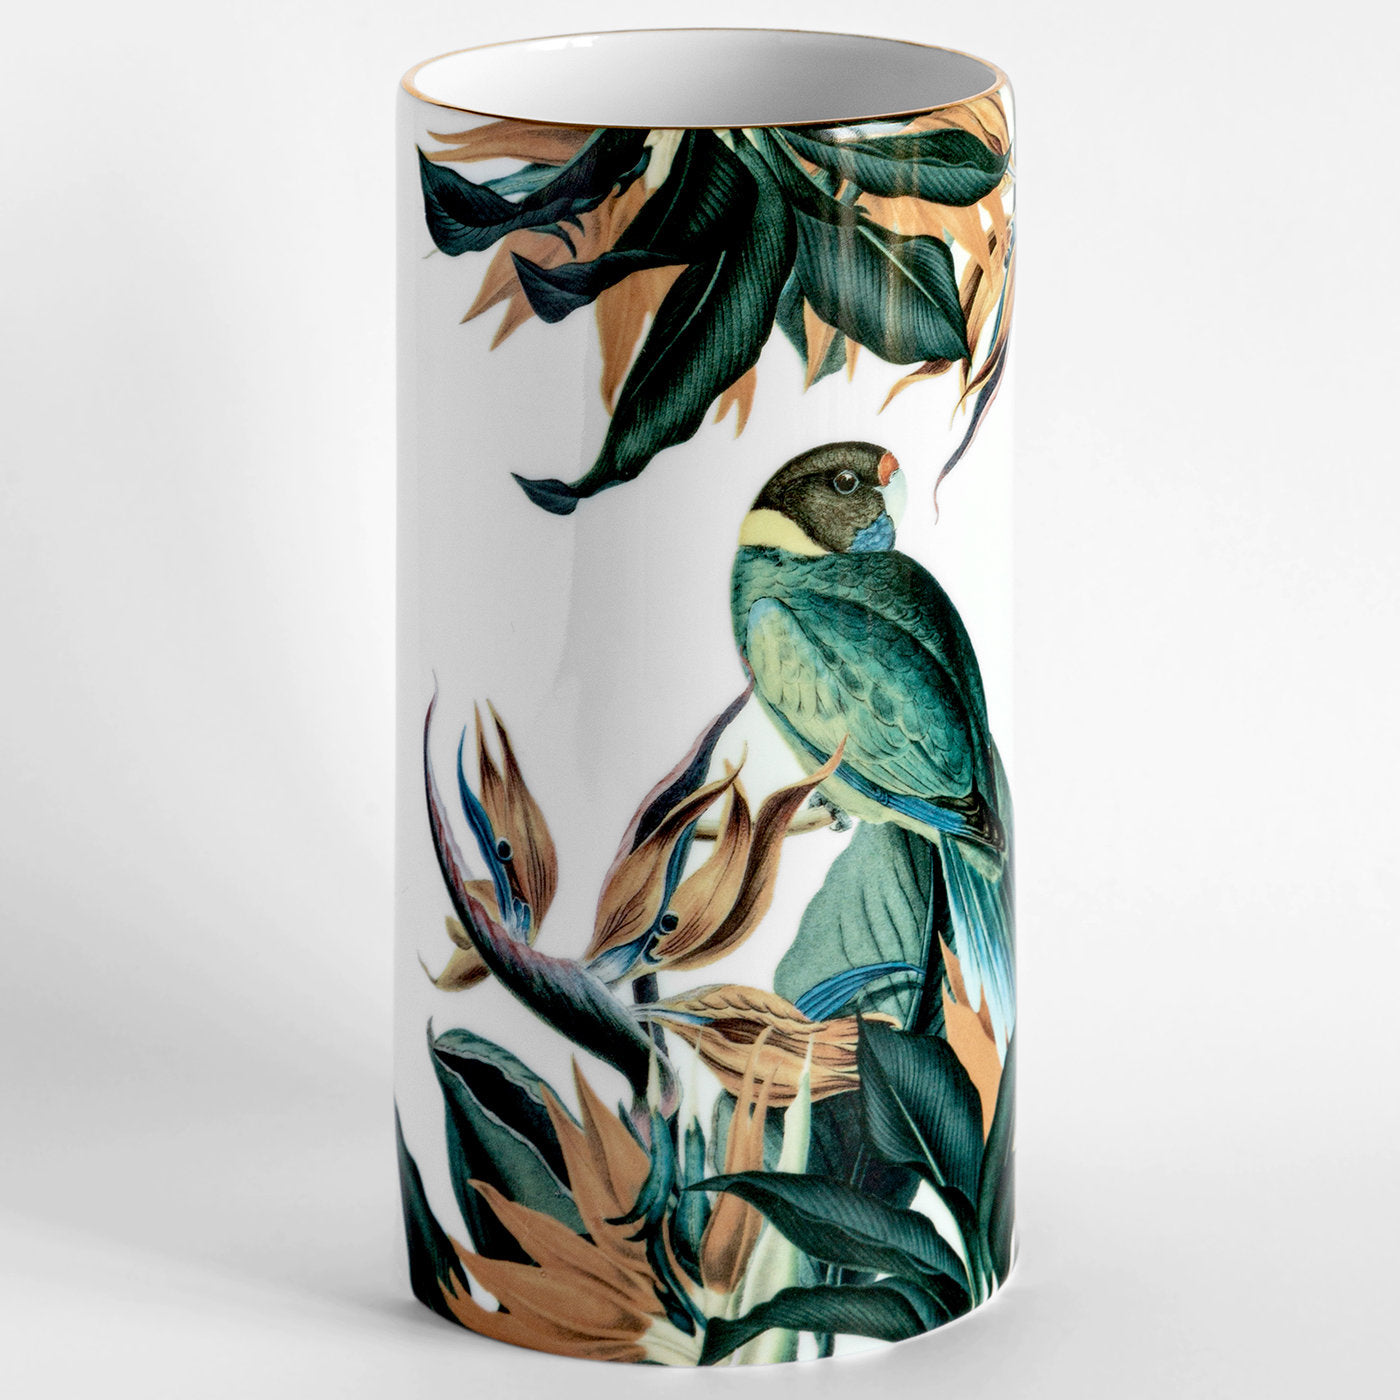 Animalia Porcelain Cylindrical Vase With Parot - Alternative view 1